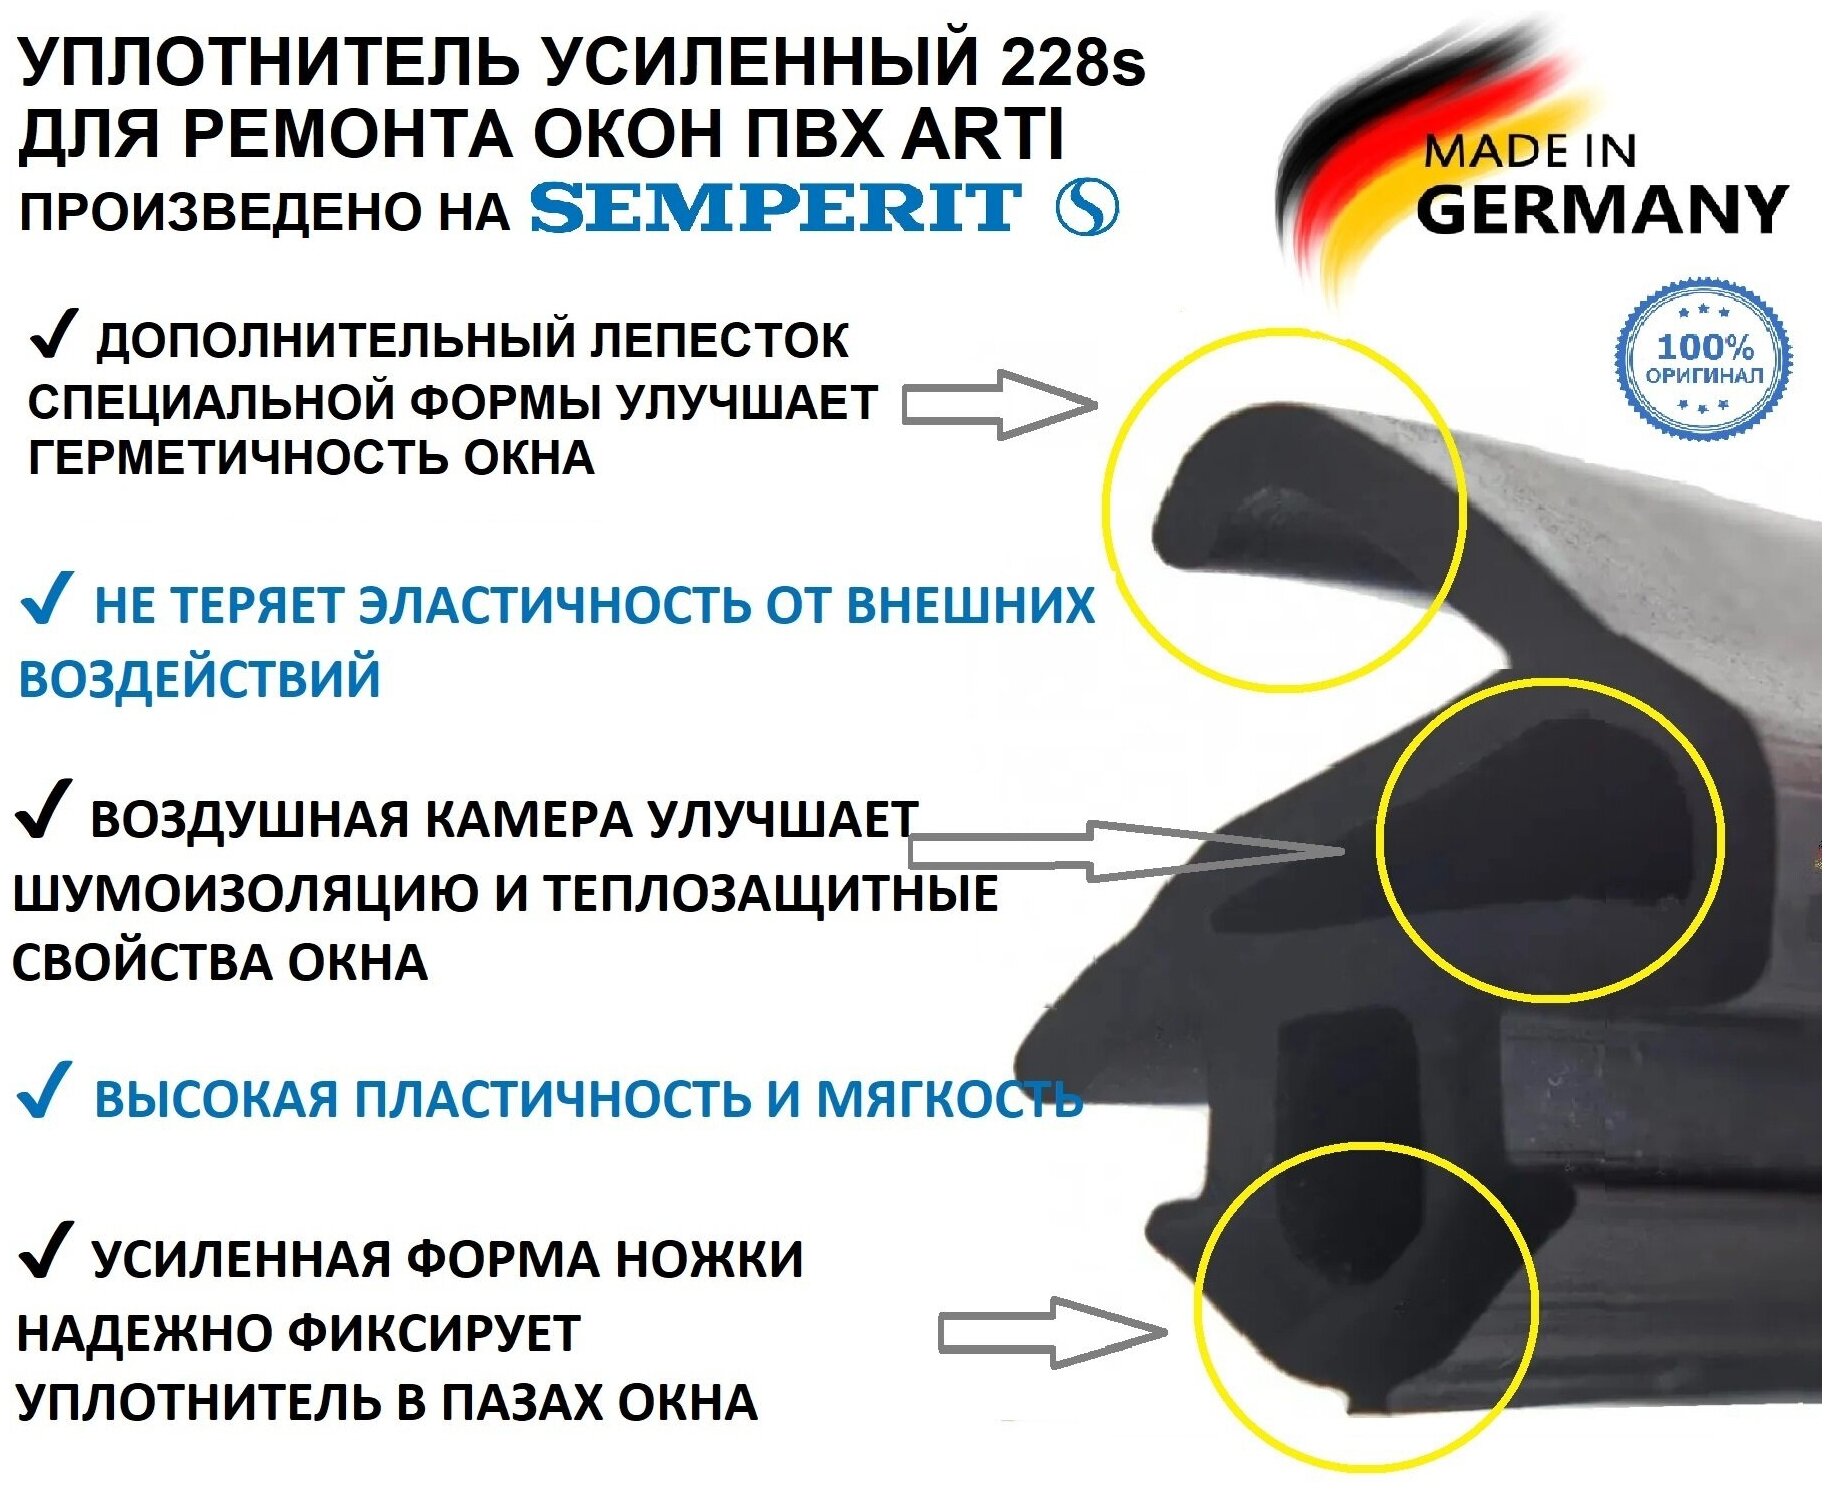 Уплотнитель усиленный ARTI Semperit (Германия) для ремонта окон ПВХ 228 (12,2 mm*10,6 mm) 50 метров, черный